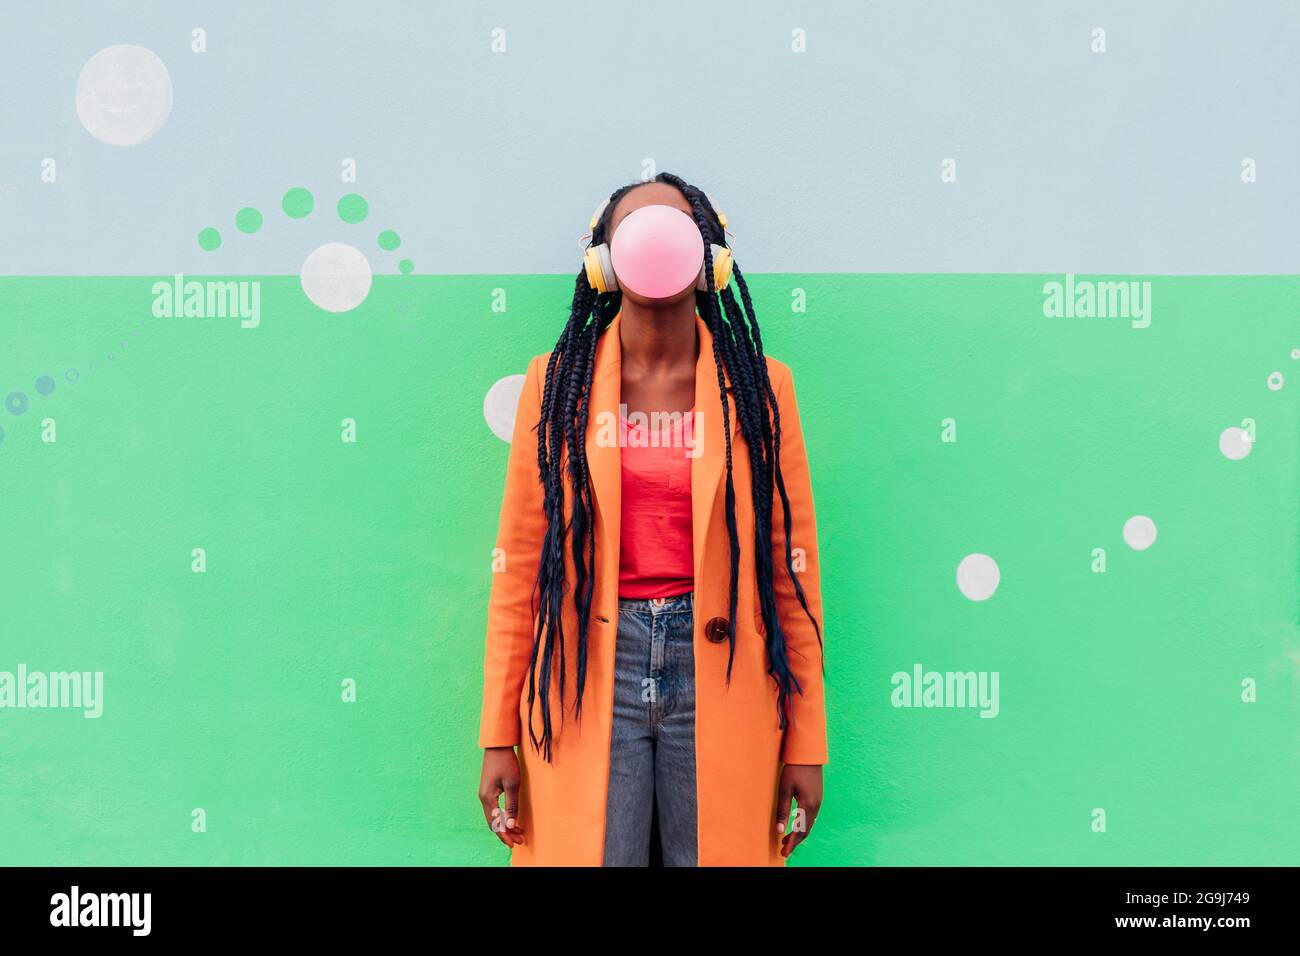 Italien, Mailand, stilvolle Frau mit Kopfhörern, die Gummi gegen die Wand bläst Stockfoto